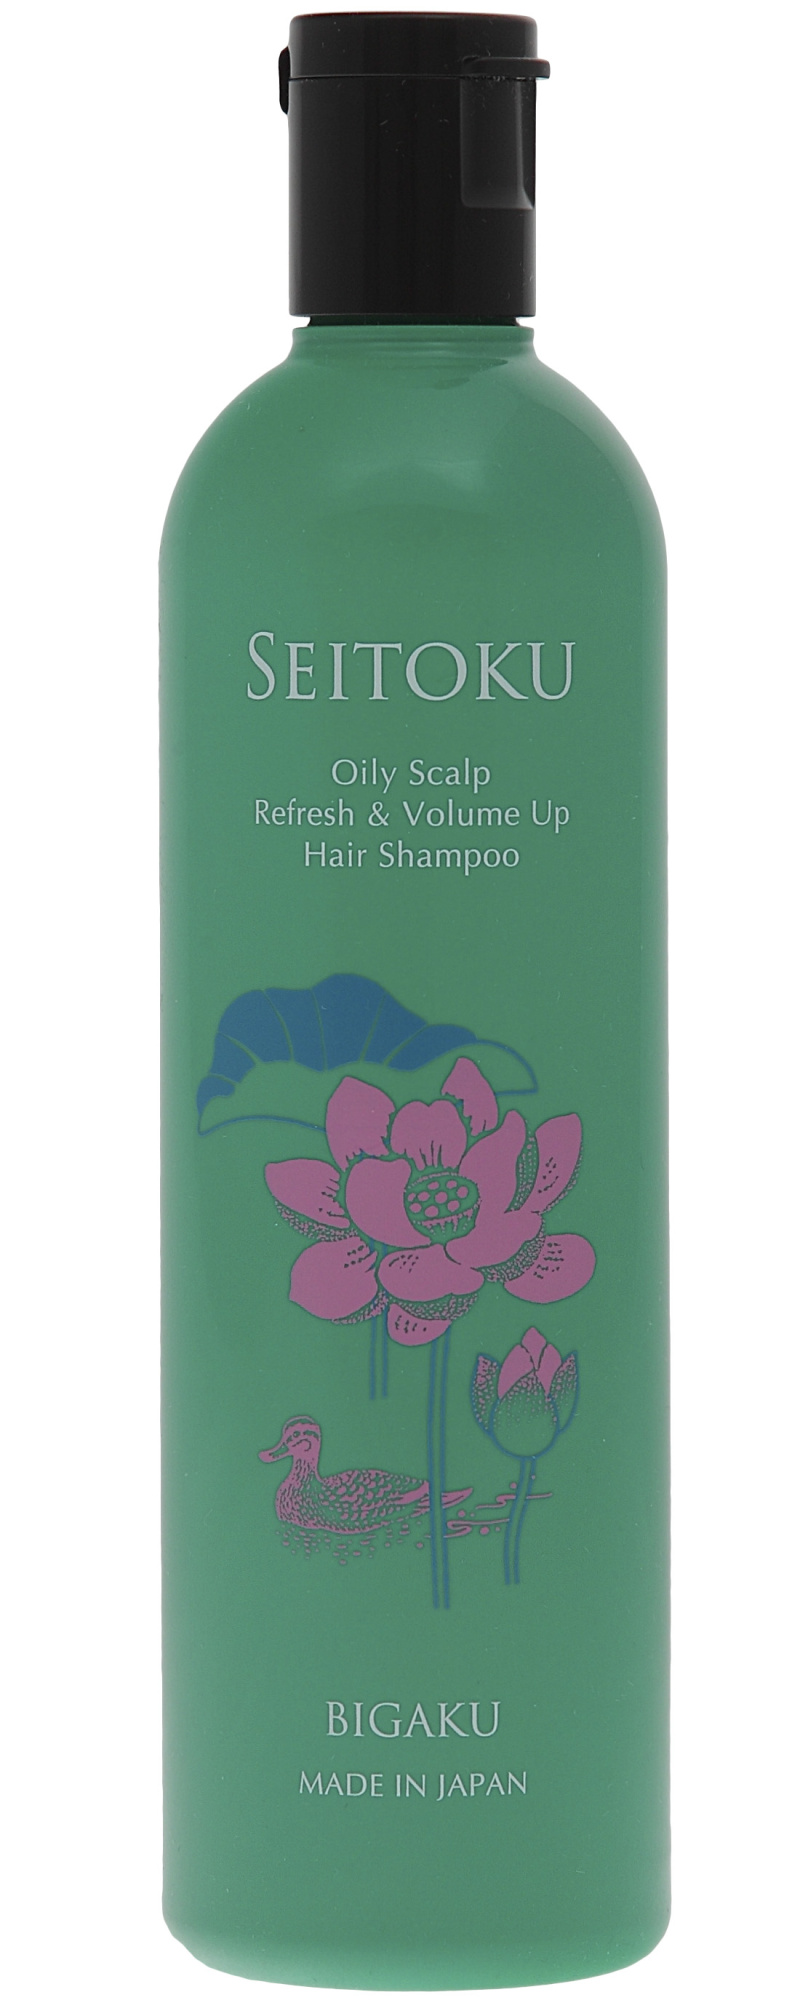 Шампунь для ухода за жирной кожей головы, профилактики появления перхоти и придания объема волосам Bigaku Oily Scalp  Refresh & Volume Up Hair Shampoo